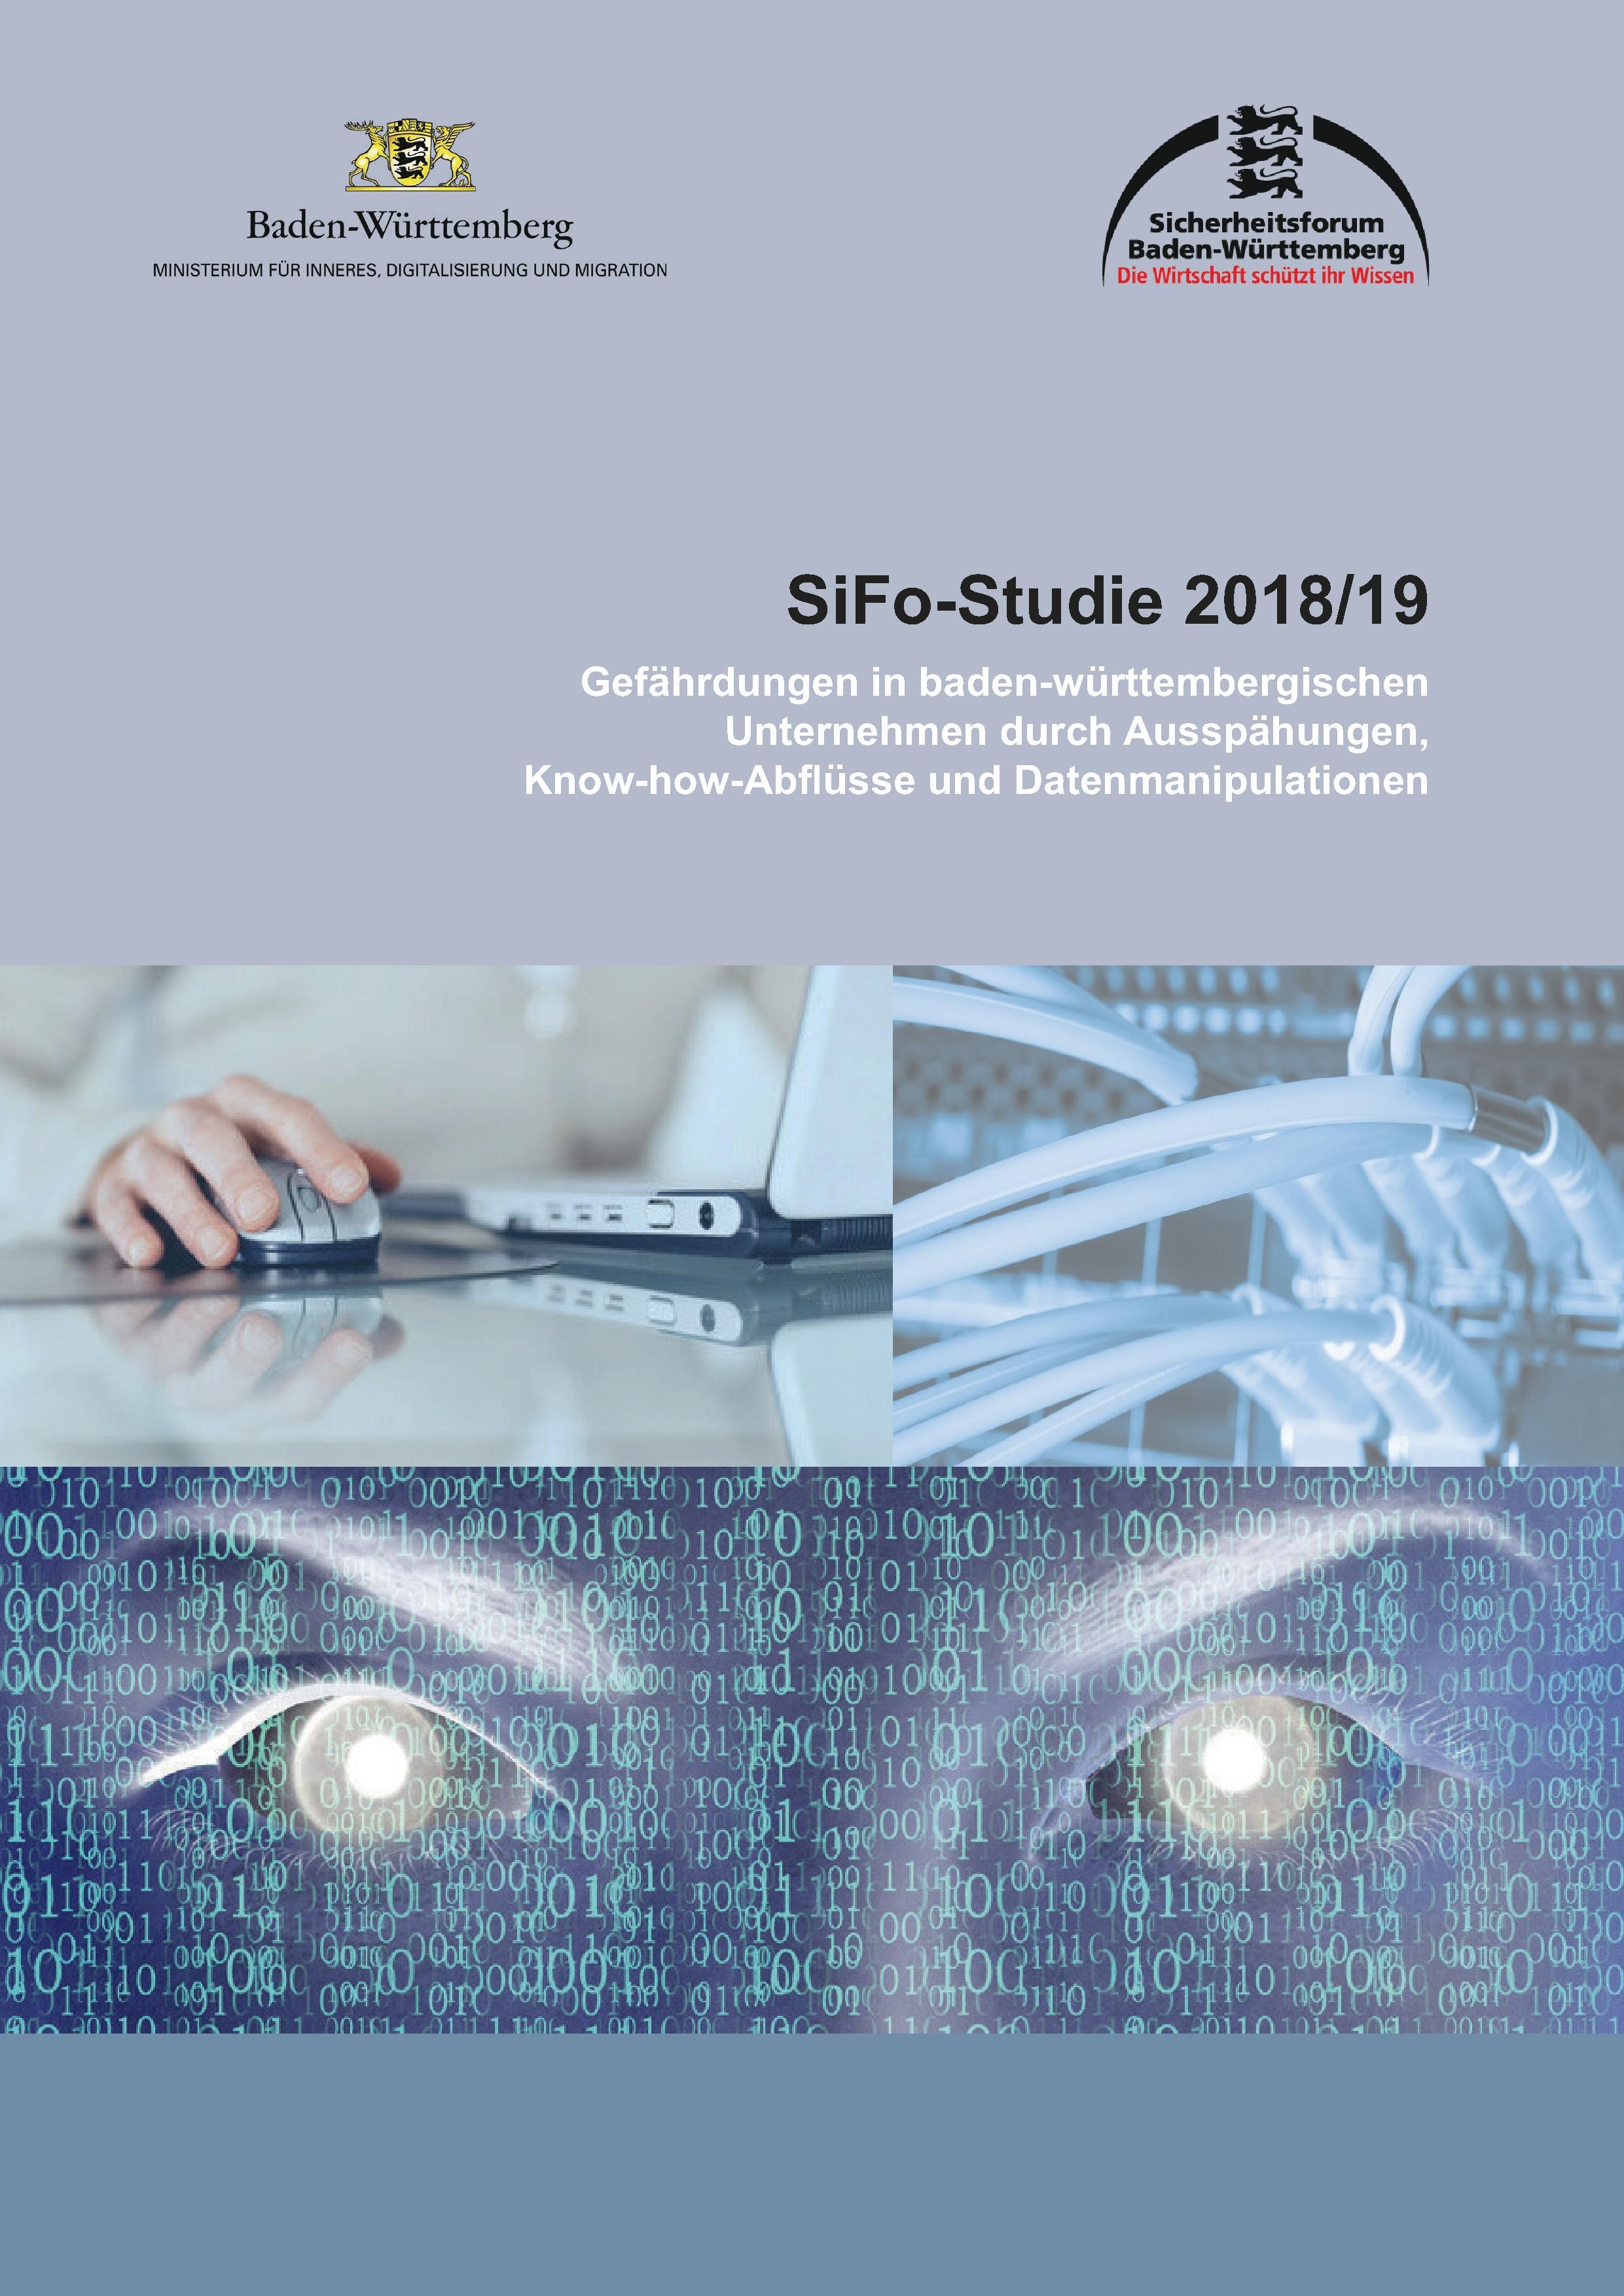 SiFo-Studie_2018-19_Gefahrdungen_in_baden-wurttembergischen_Unternehmen.jpg